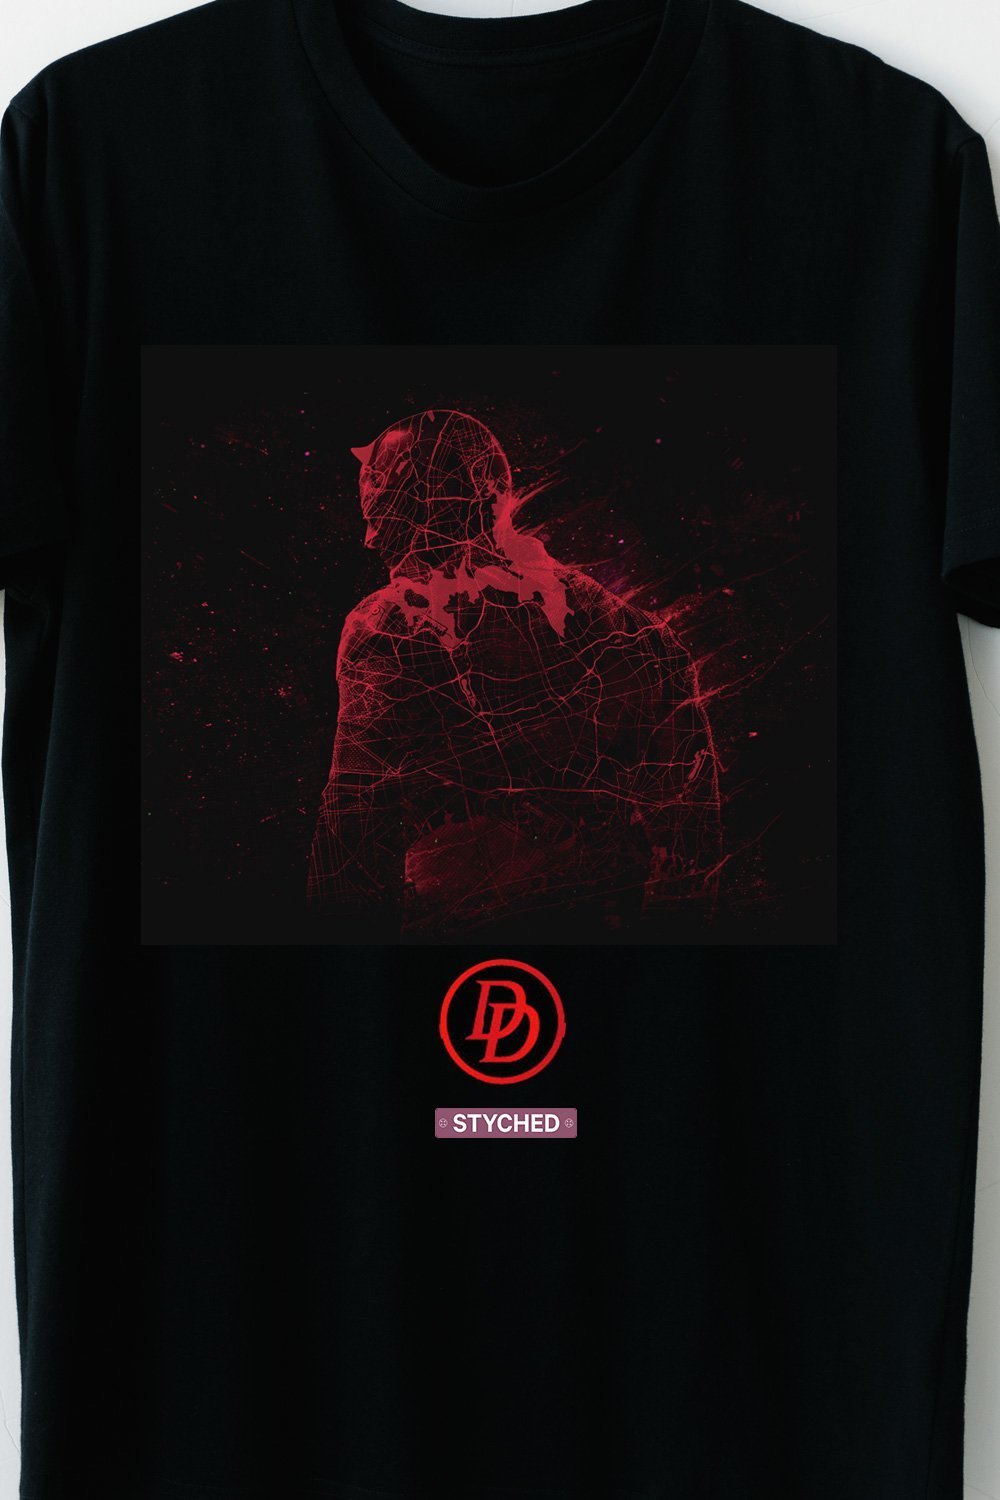 Daredevil - Red Inked Block Printed TShirt